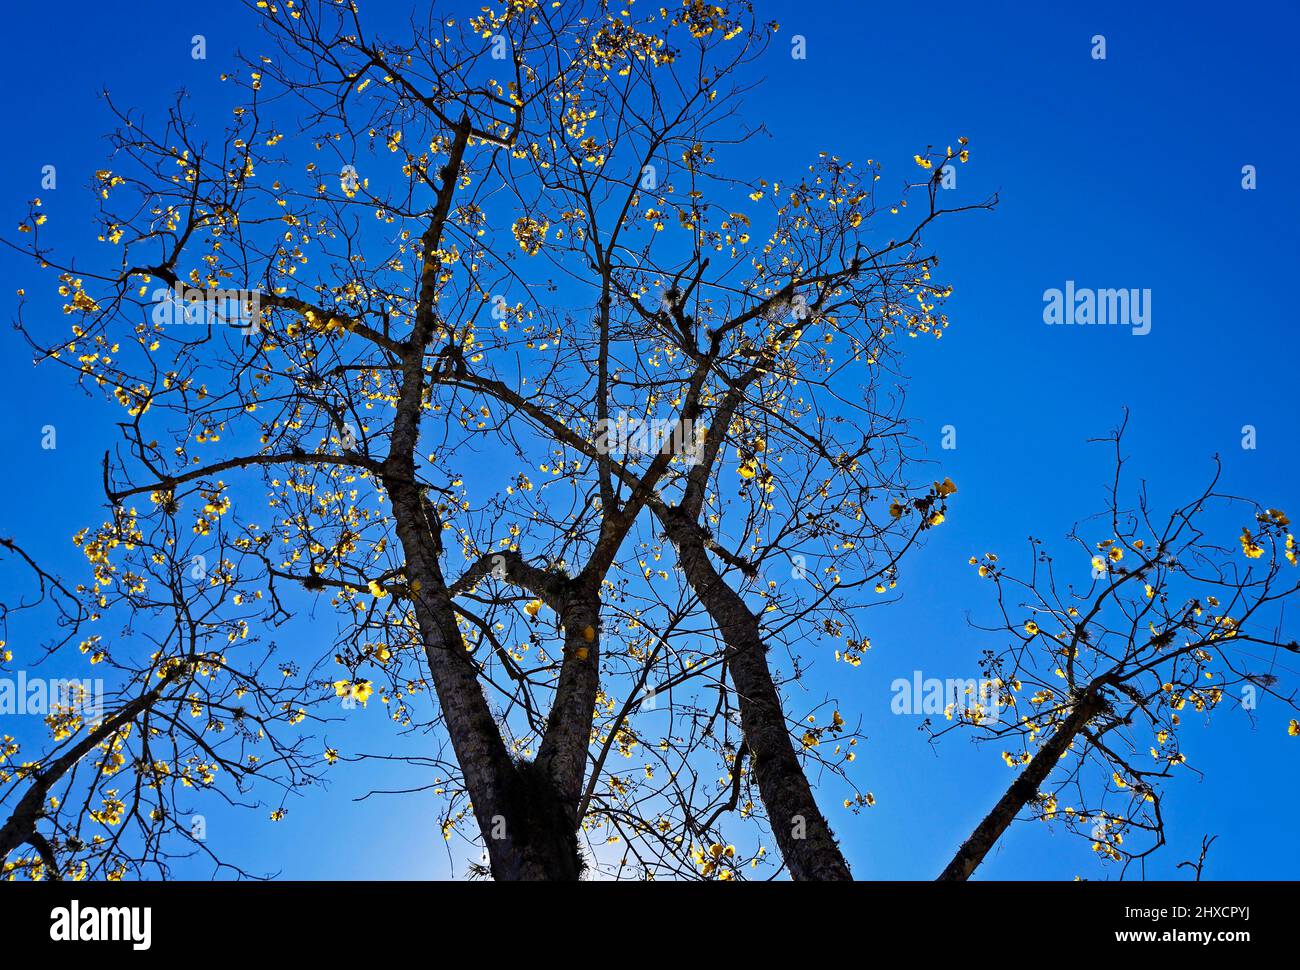 Yellow flowers on tree (Cochlospermum vitifolium) Stock Photo